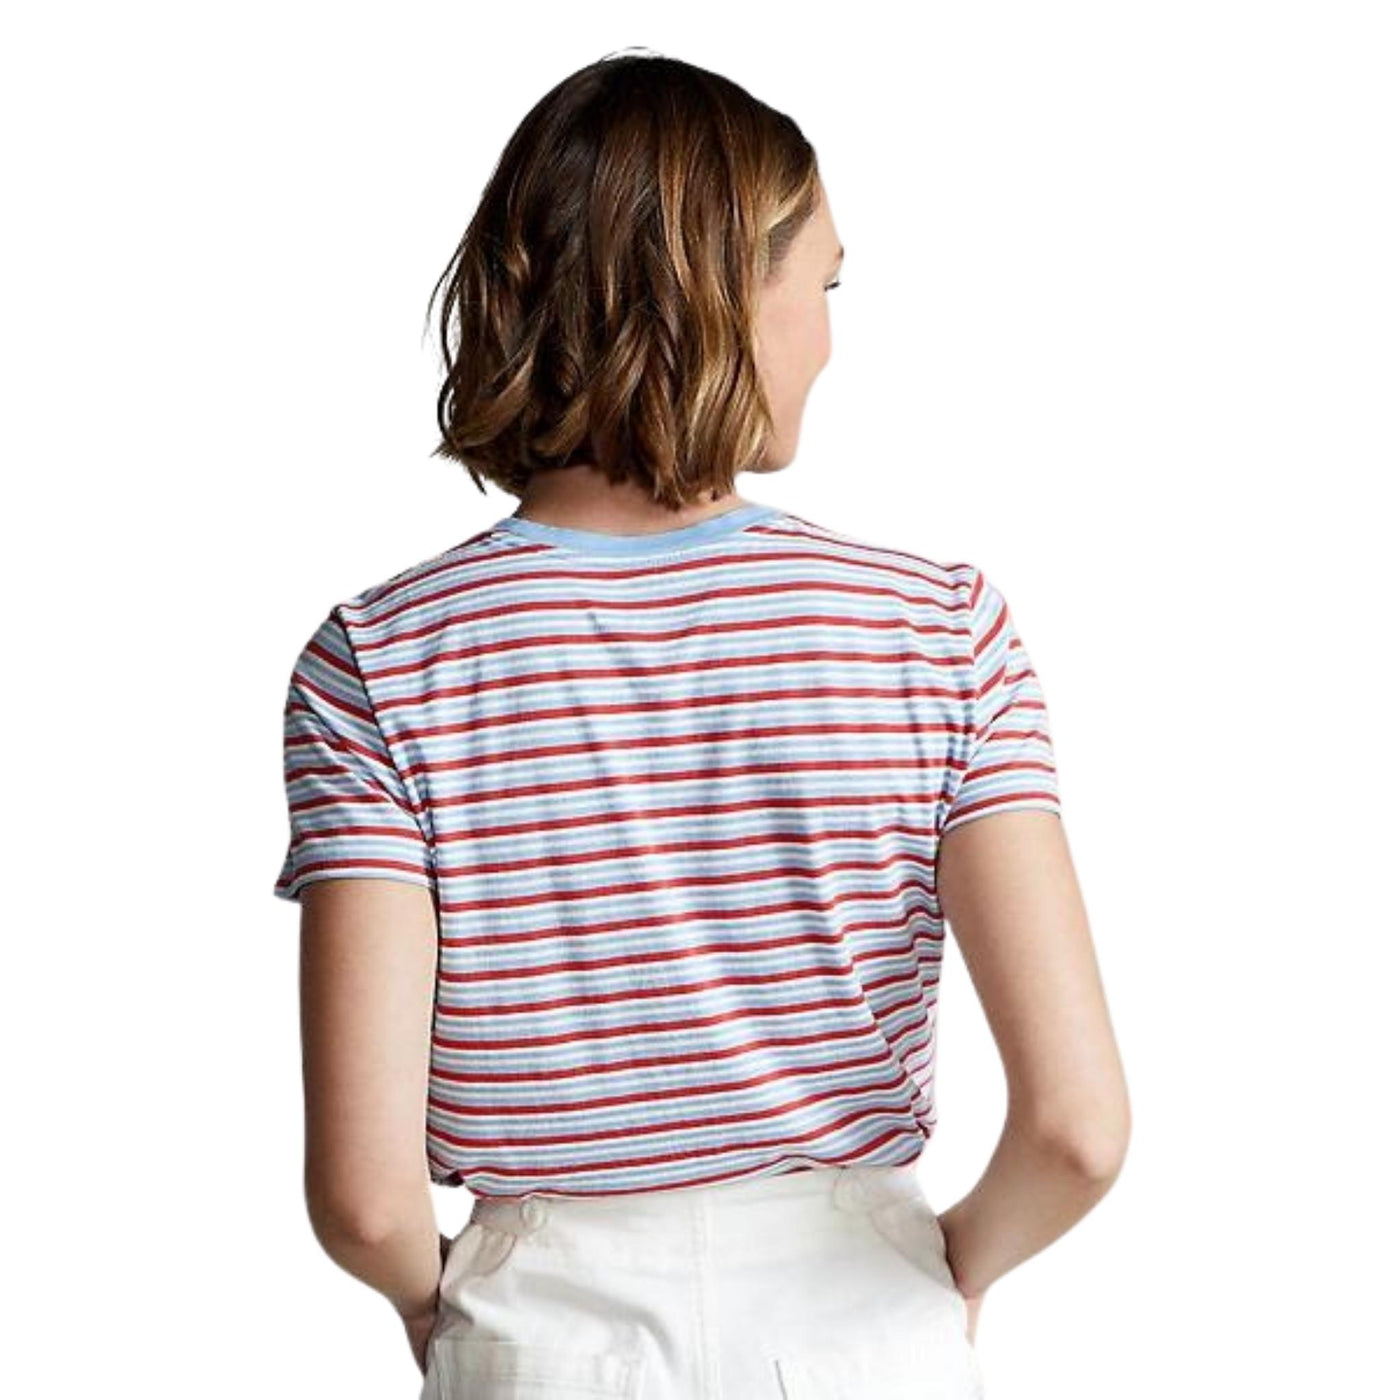 T-shirt Donna a righe orizzontali con mini logo sul petto